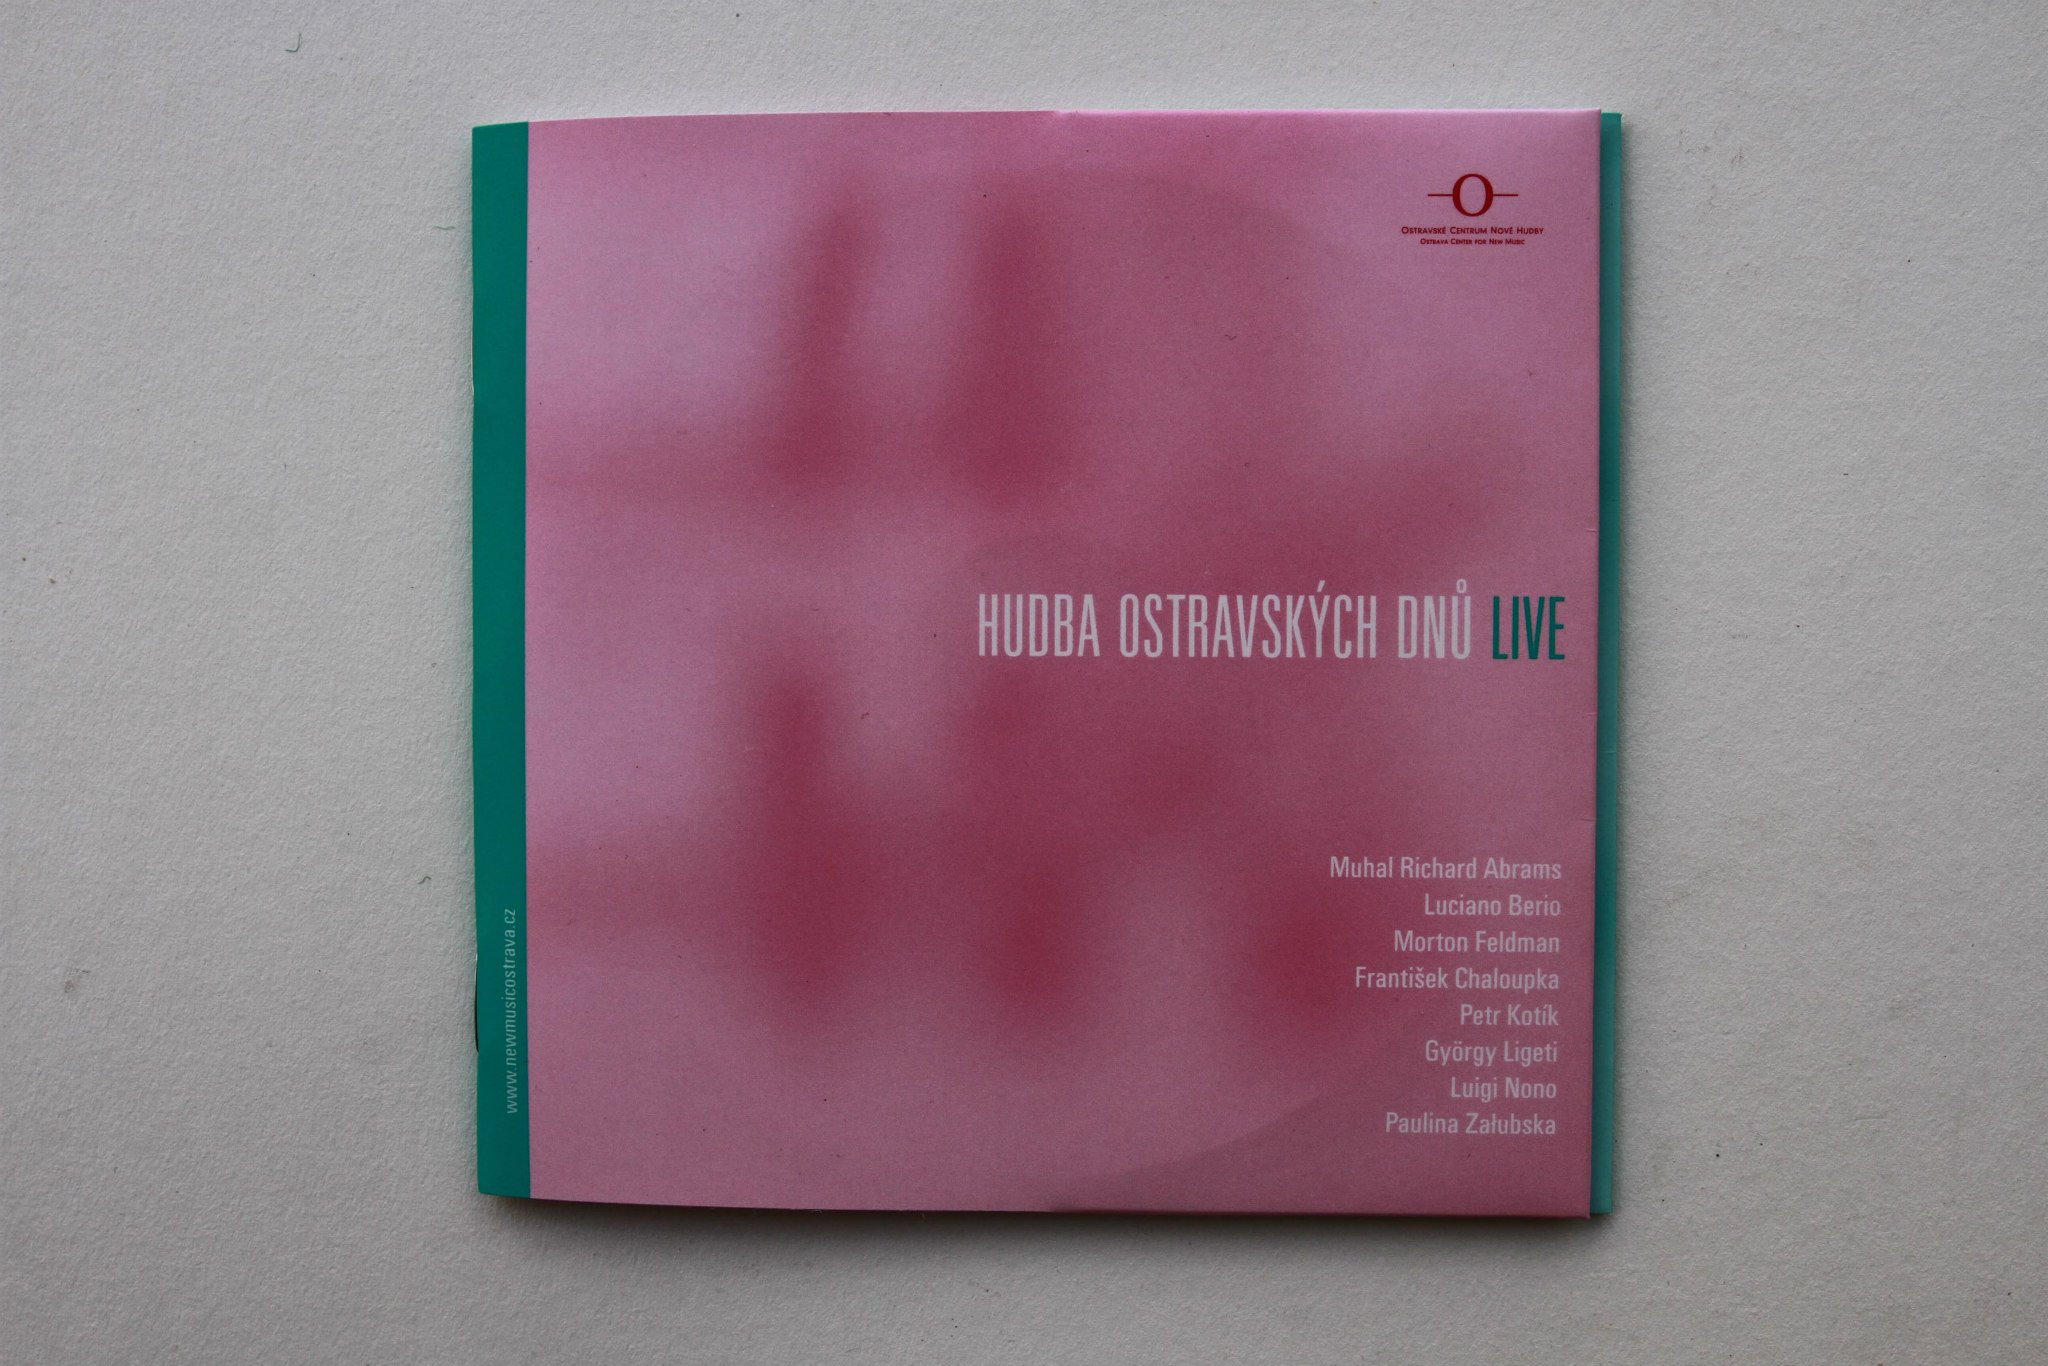 Hudba Ostravských dnů live (2009)